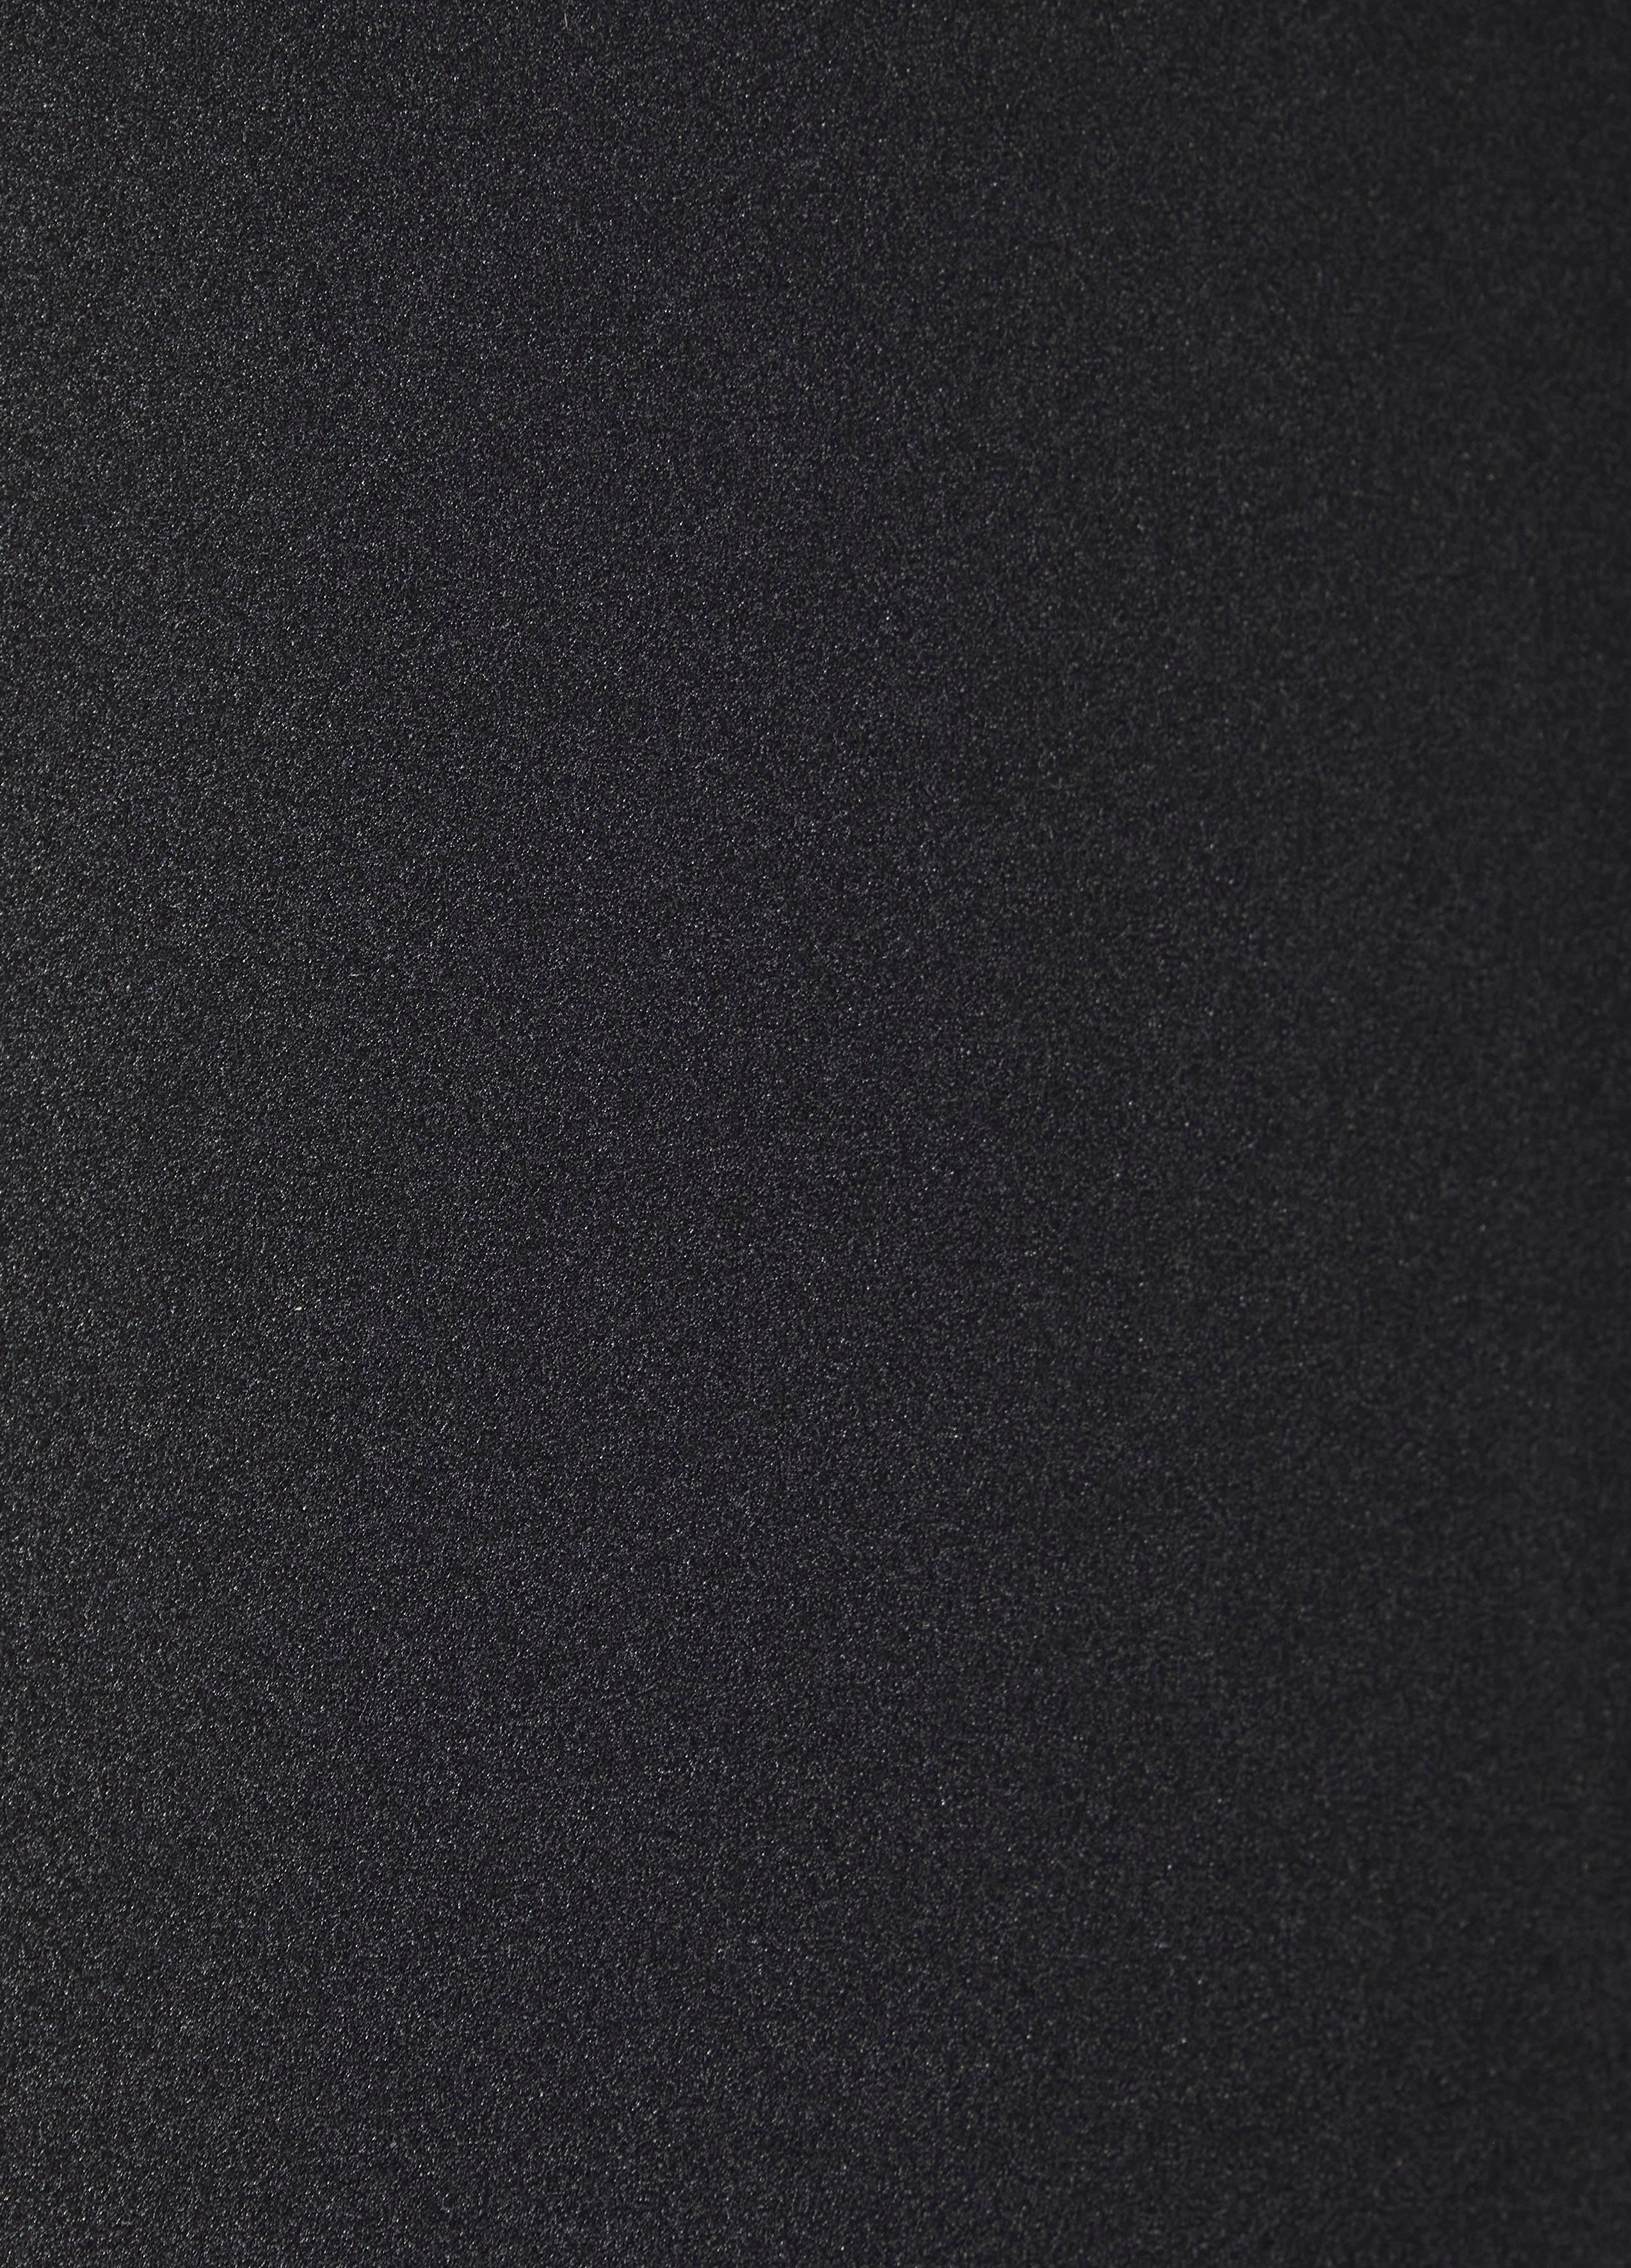 Hisense Side-by-Side RS677N4AFC, 178,6 cm hoch, schwarz 91 cm breit